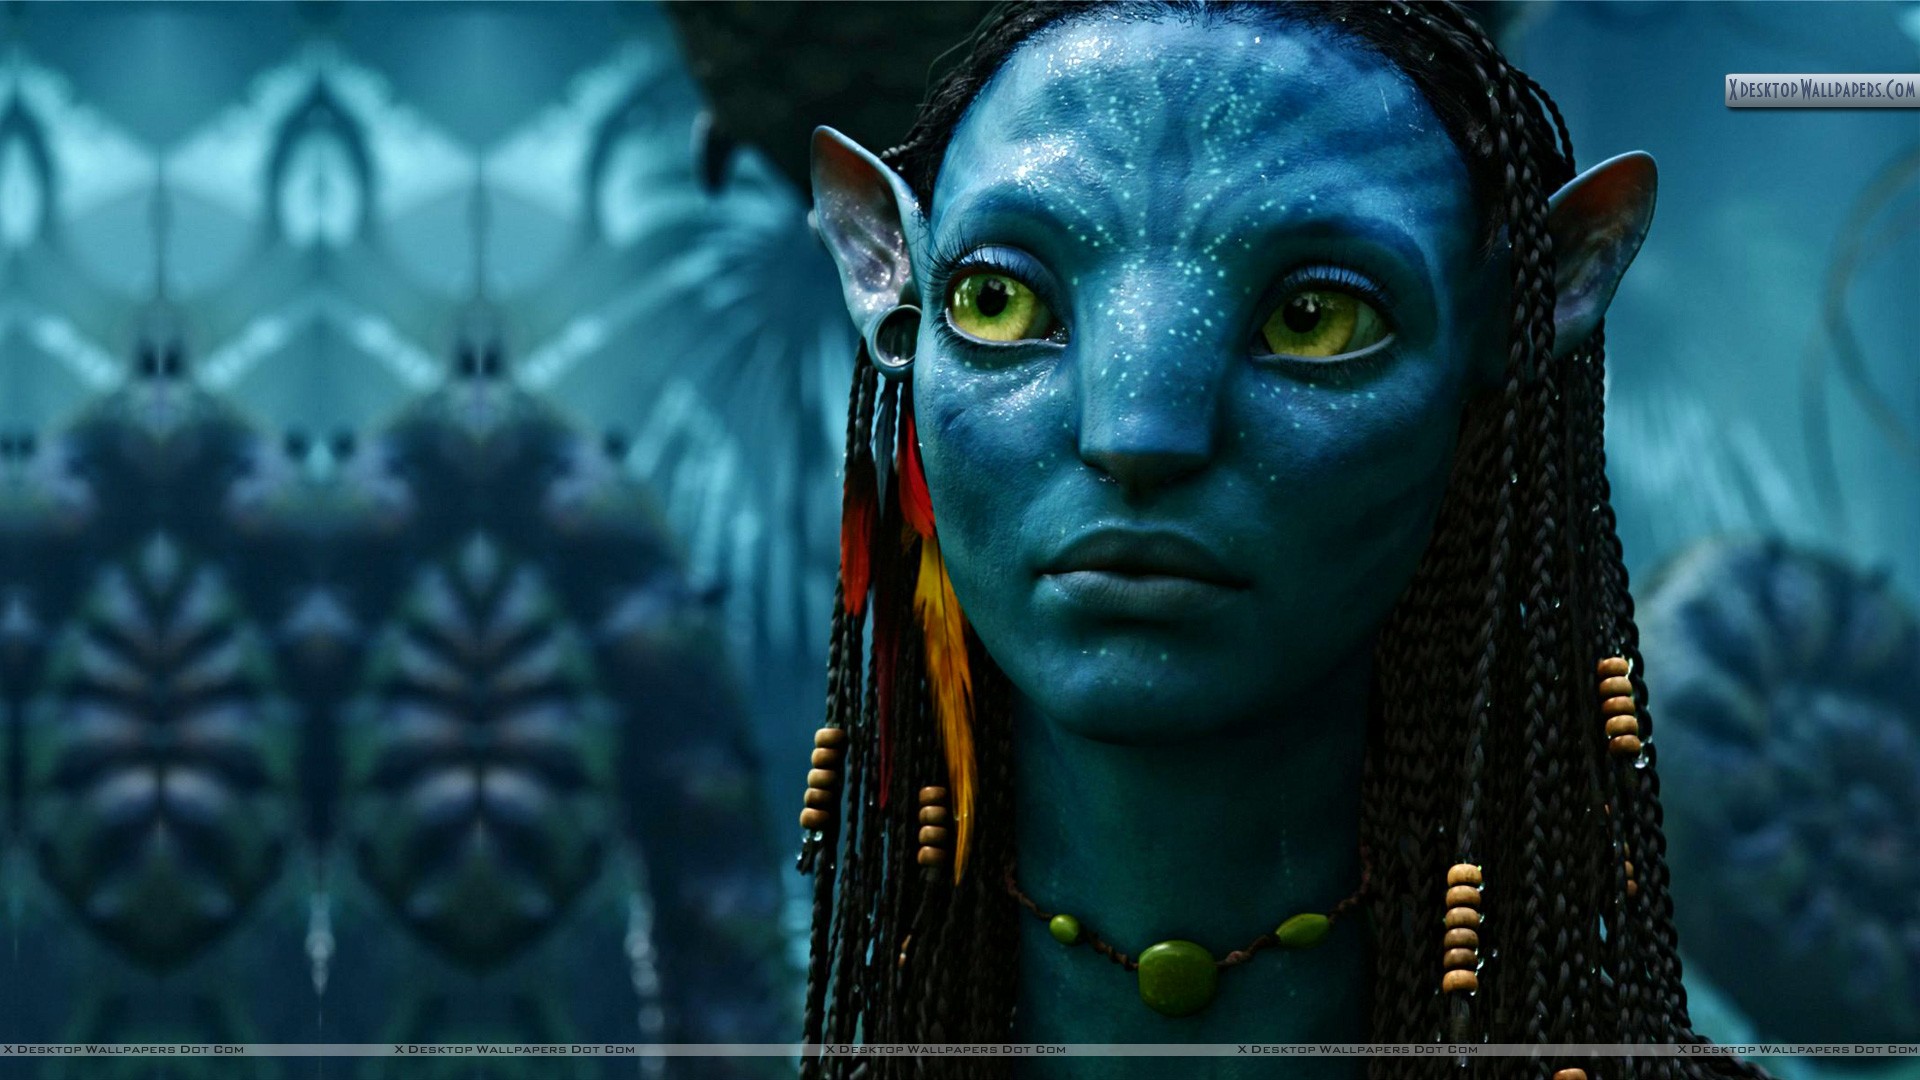 Neytiri Sad Face in Movie Avatar Wallpaper